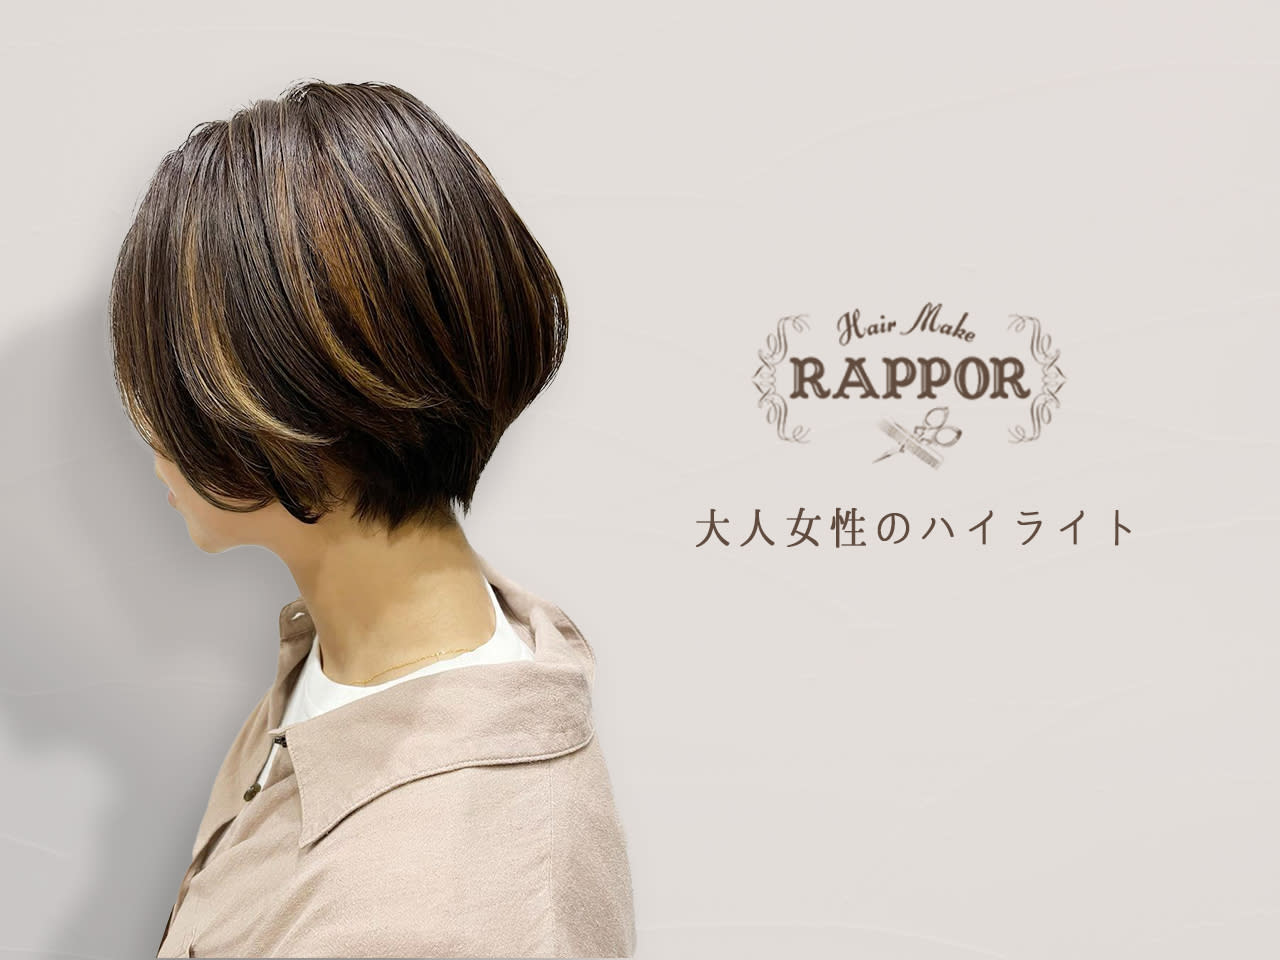 RAPPOR 豊四季店のアイキャッチ画像